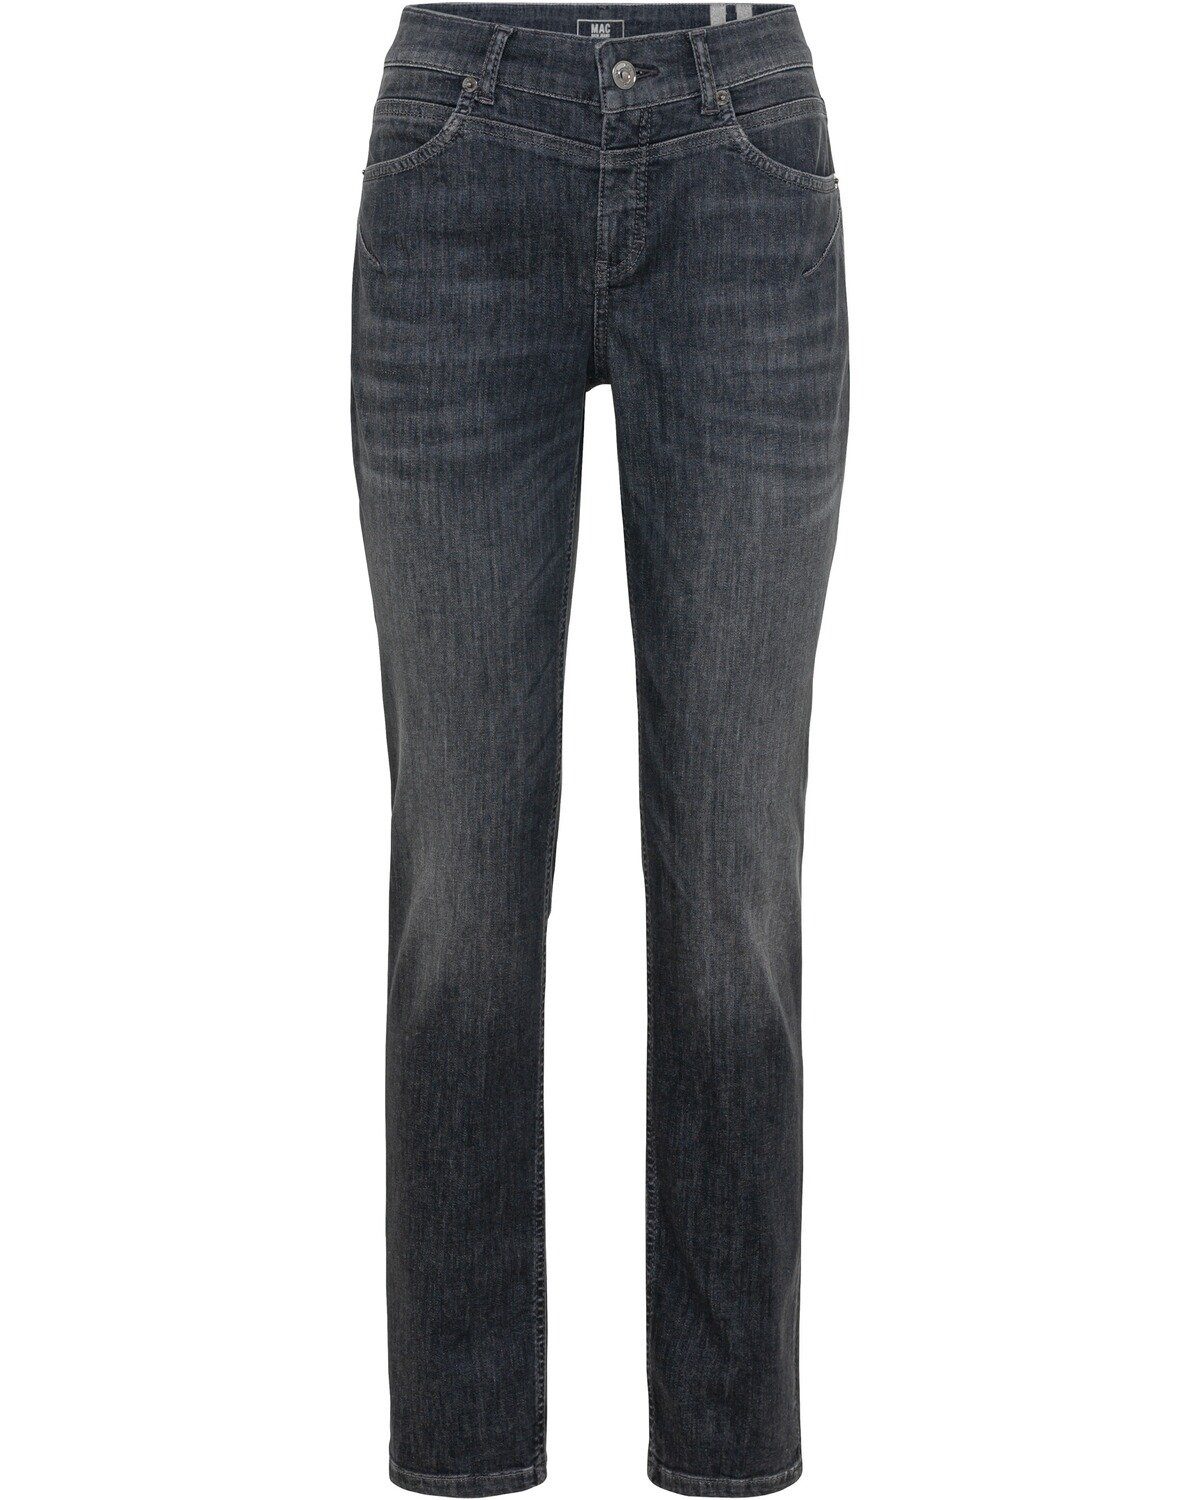 Jeans 5-Pocket-Jeans Rich MAC Grau Slim